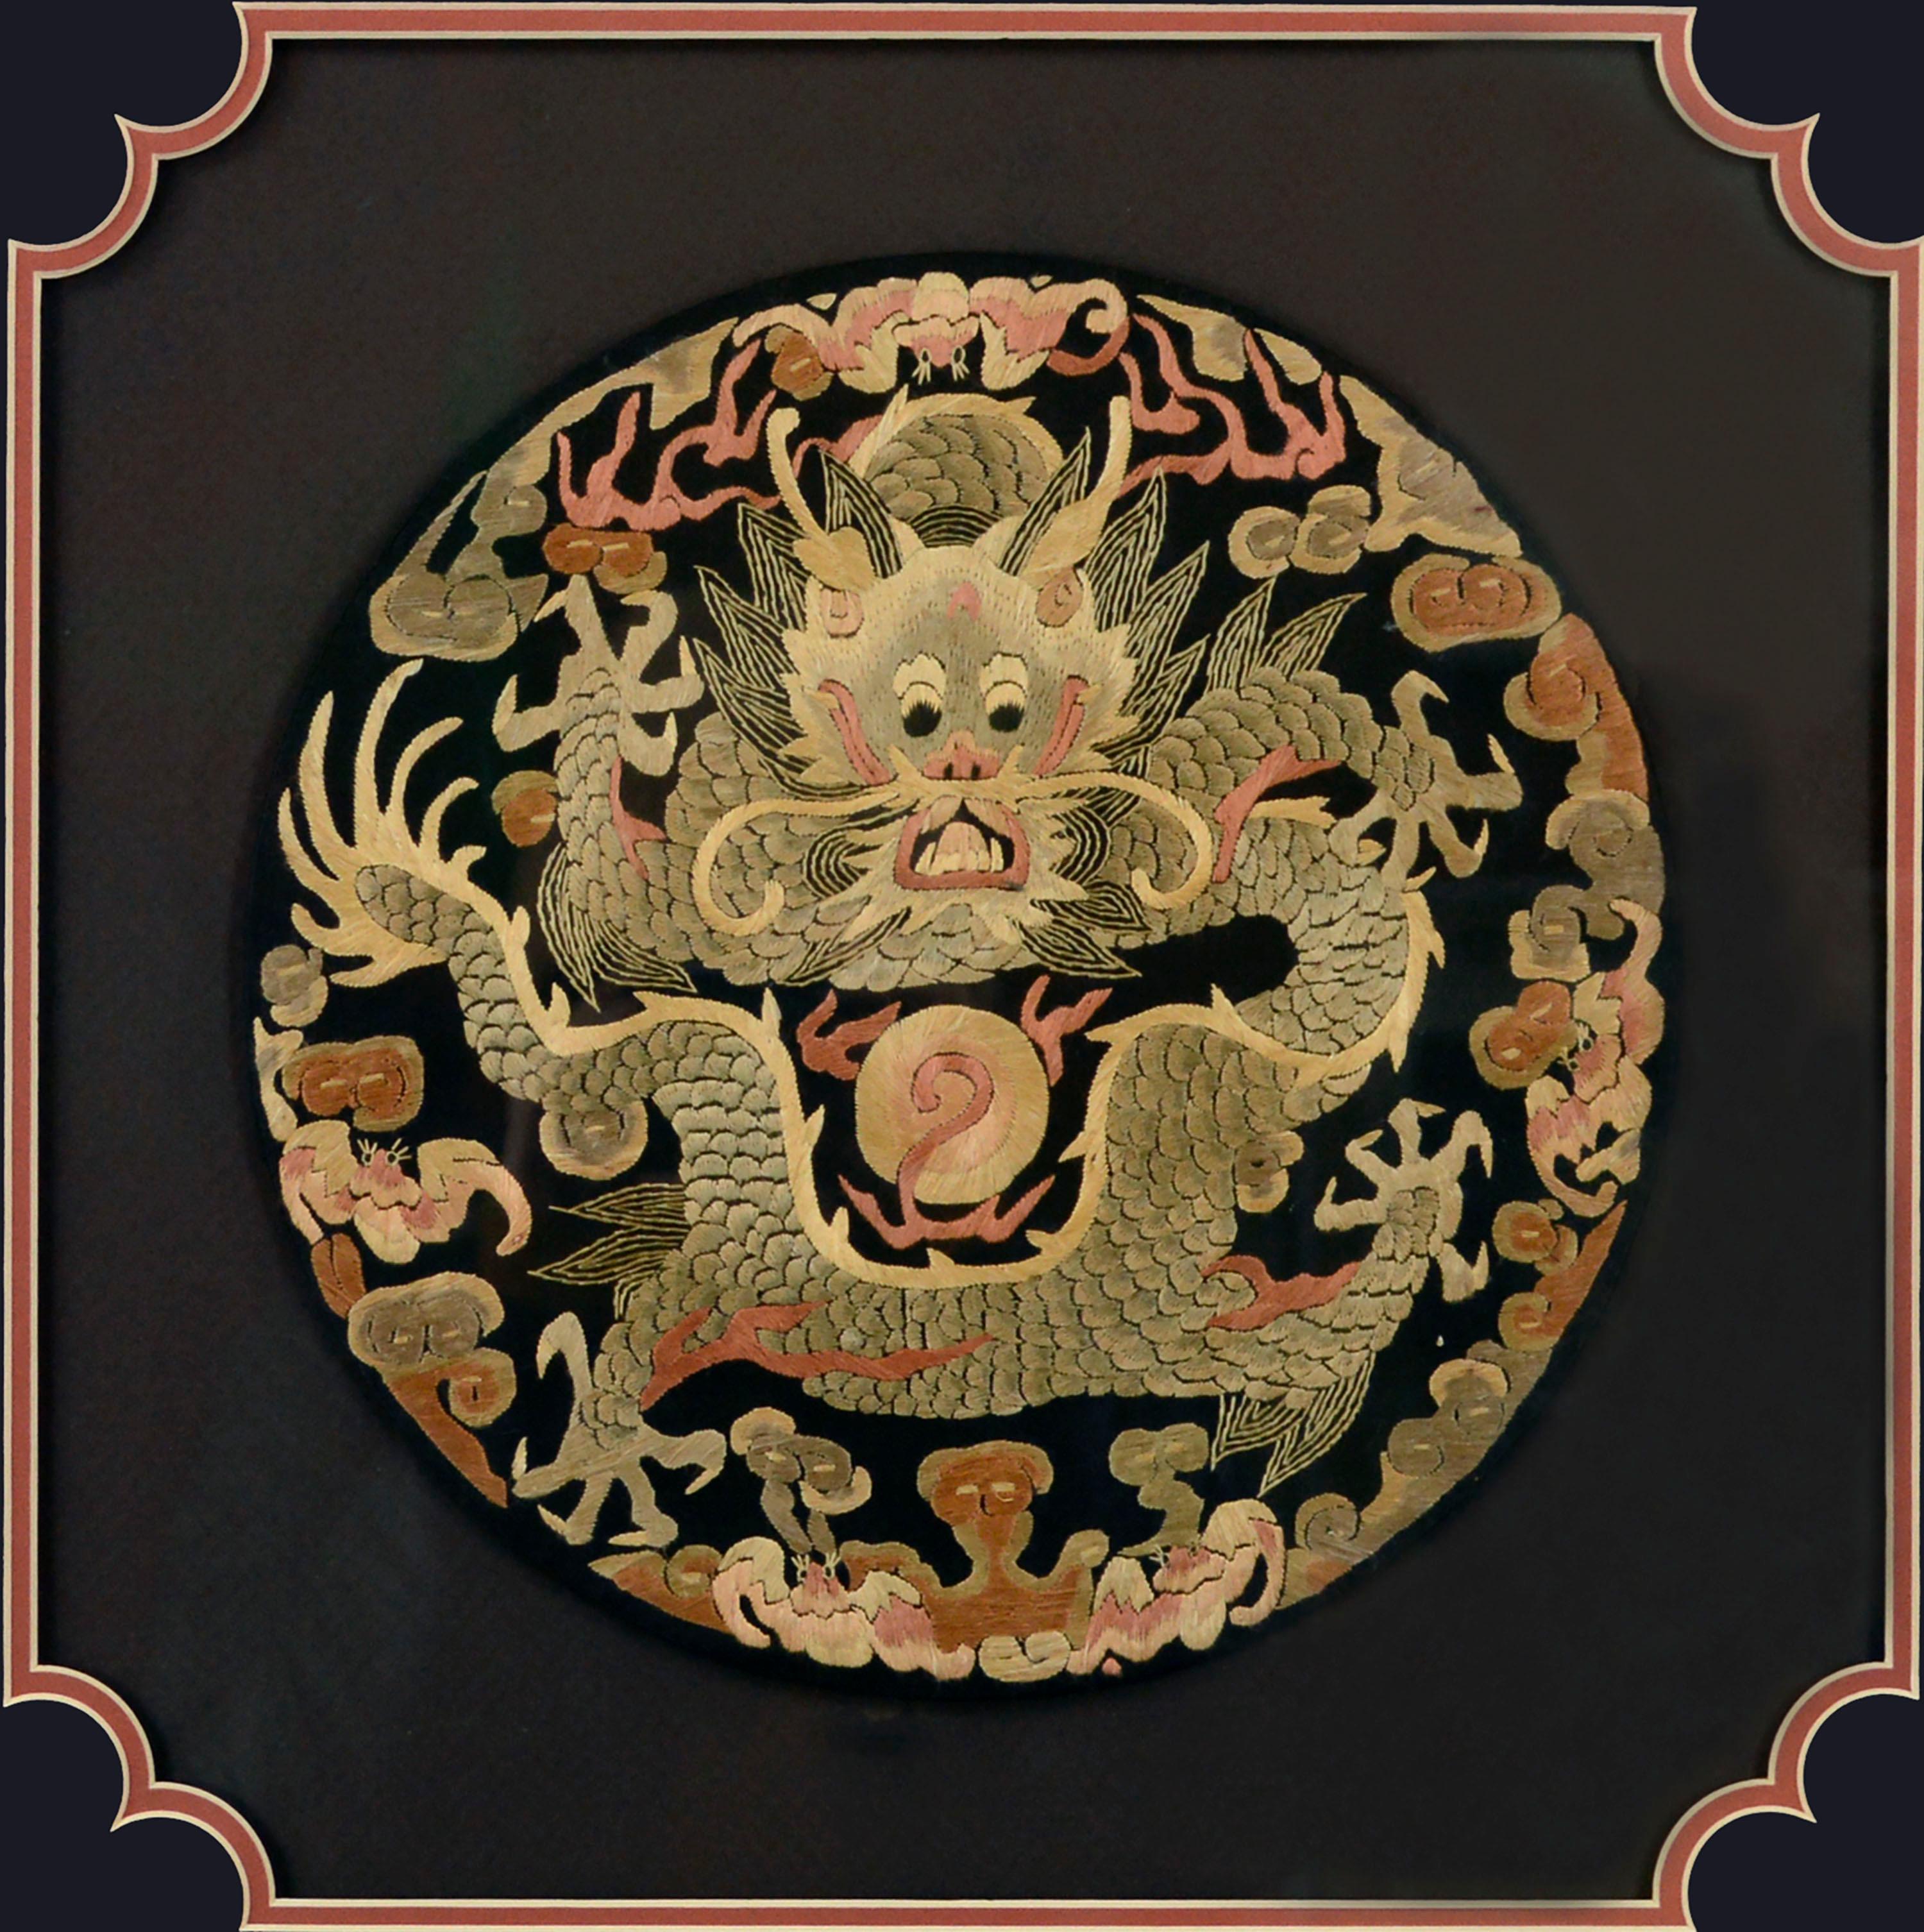 Insigne de grade en broderie de soie chinoise de la fin du XIXe siècle, avec un dragon finement détaillé et d'autres symboles brodés avec des fils jaune clair, beige, orange rouille et rouge clair sur un fond noir. Les griffes du dragon ont chacune